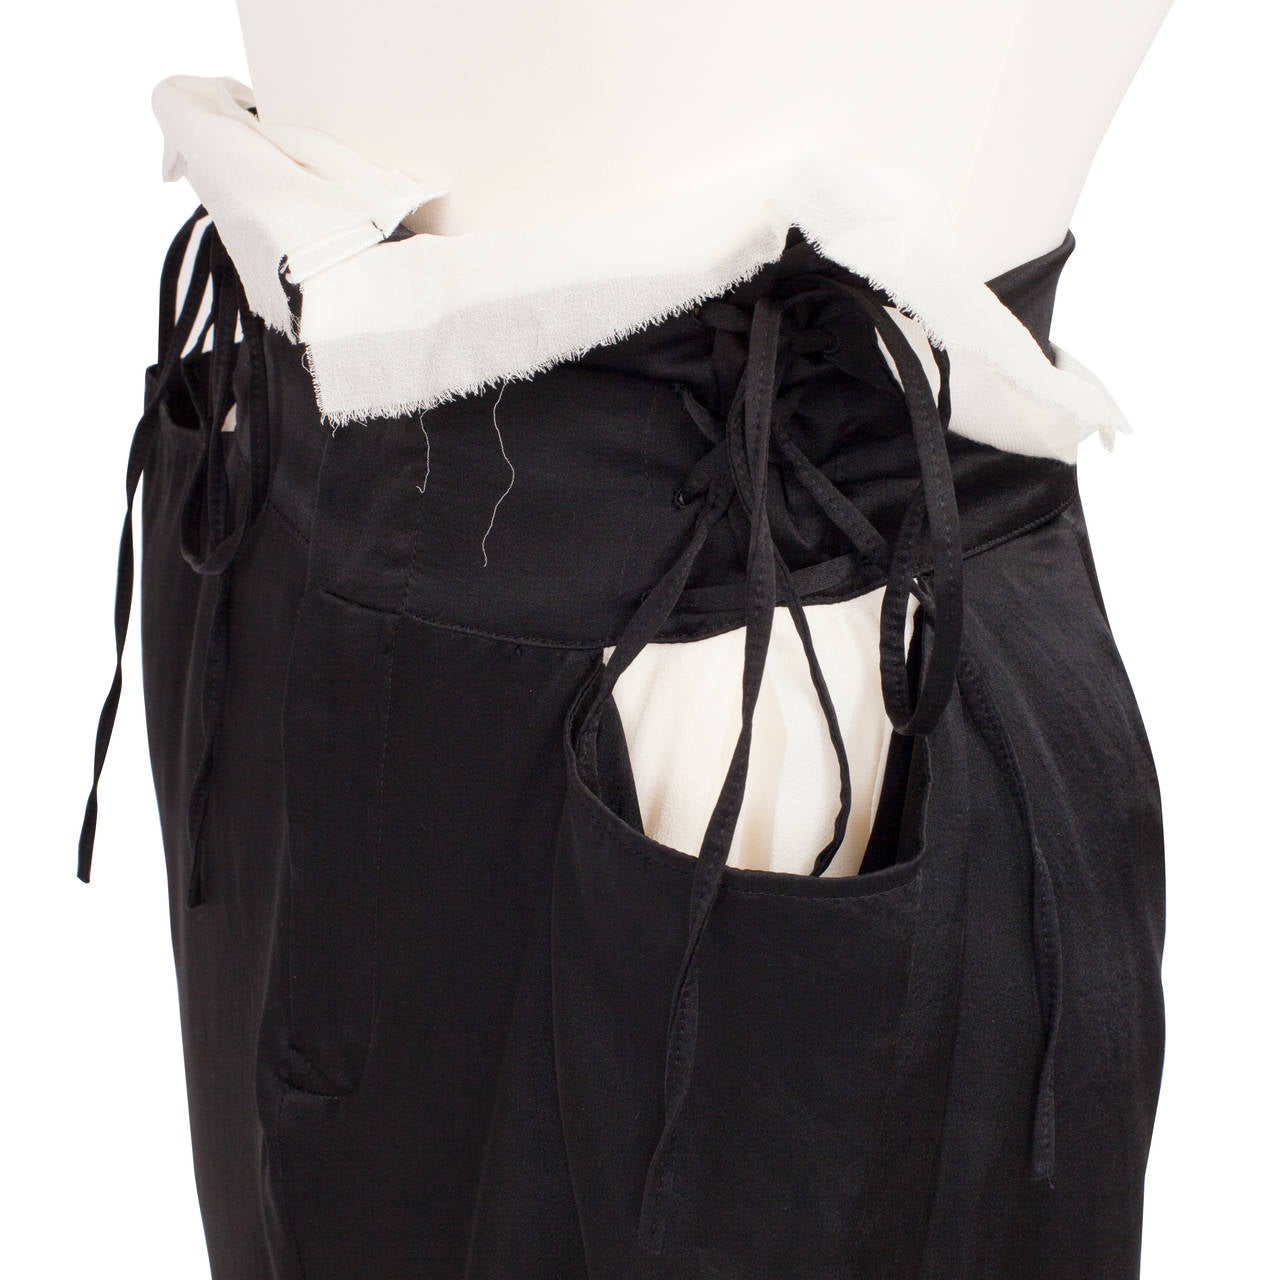 Yohji Yamamoto Lace up Black White Double layered Skirt 1990's 1